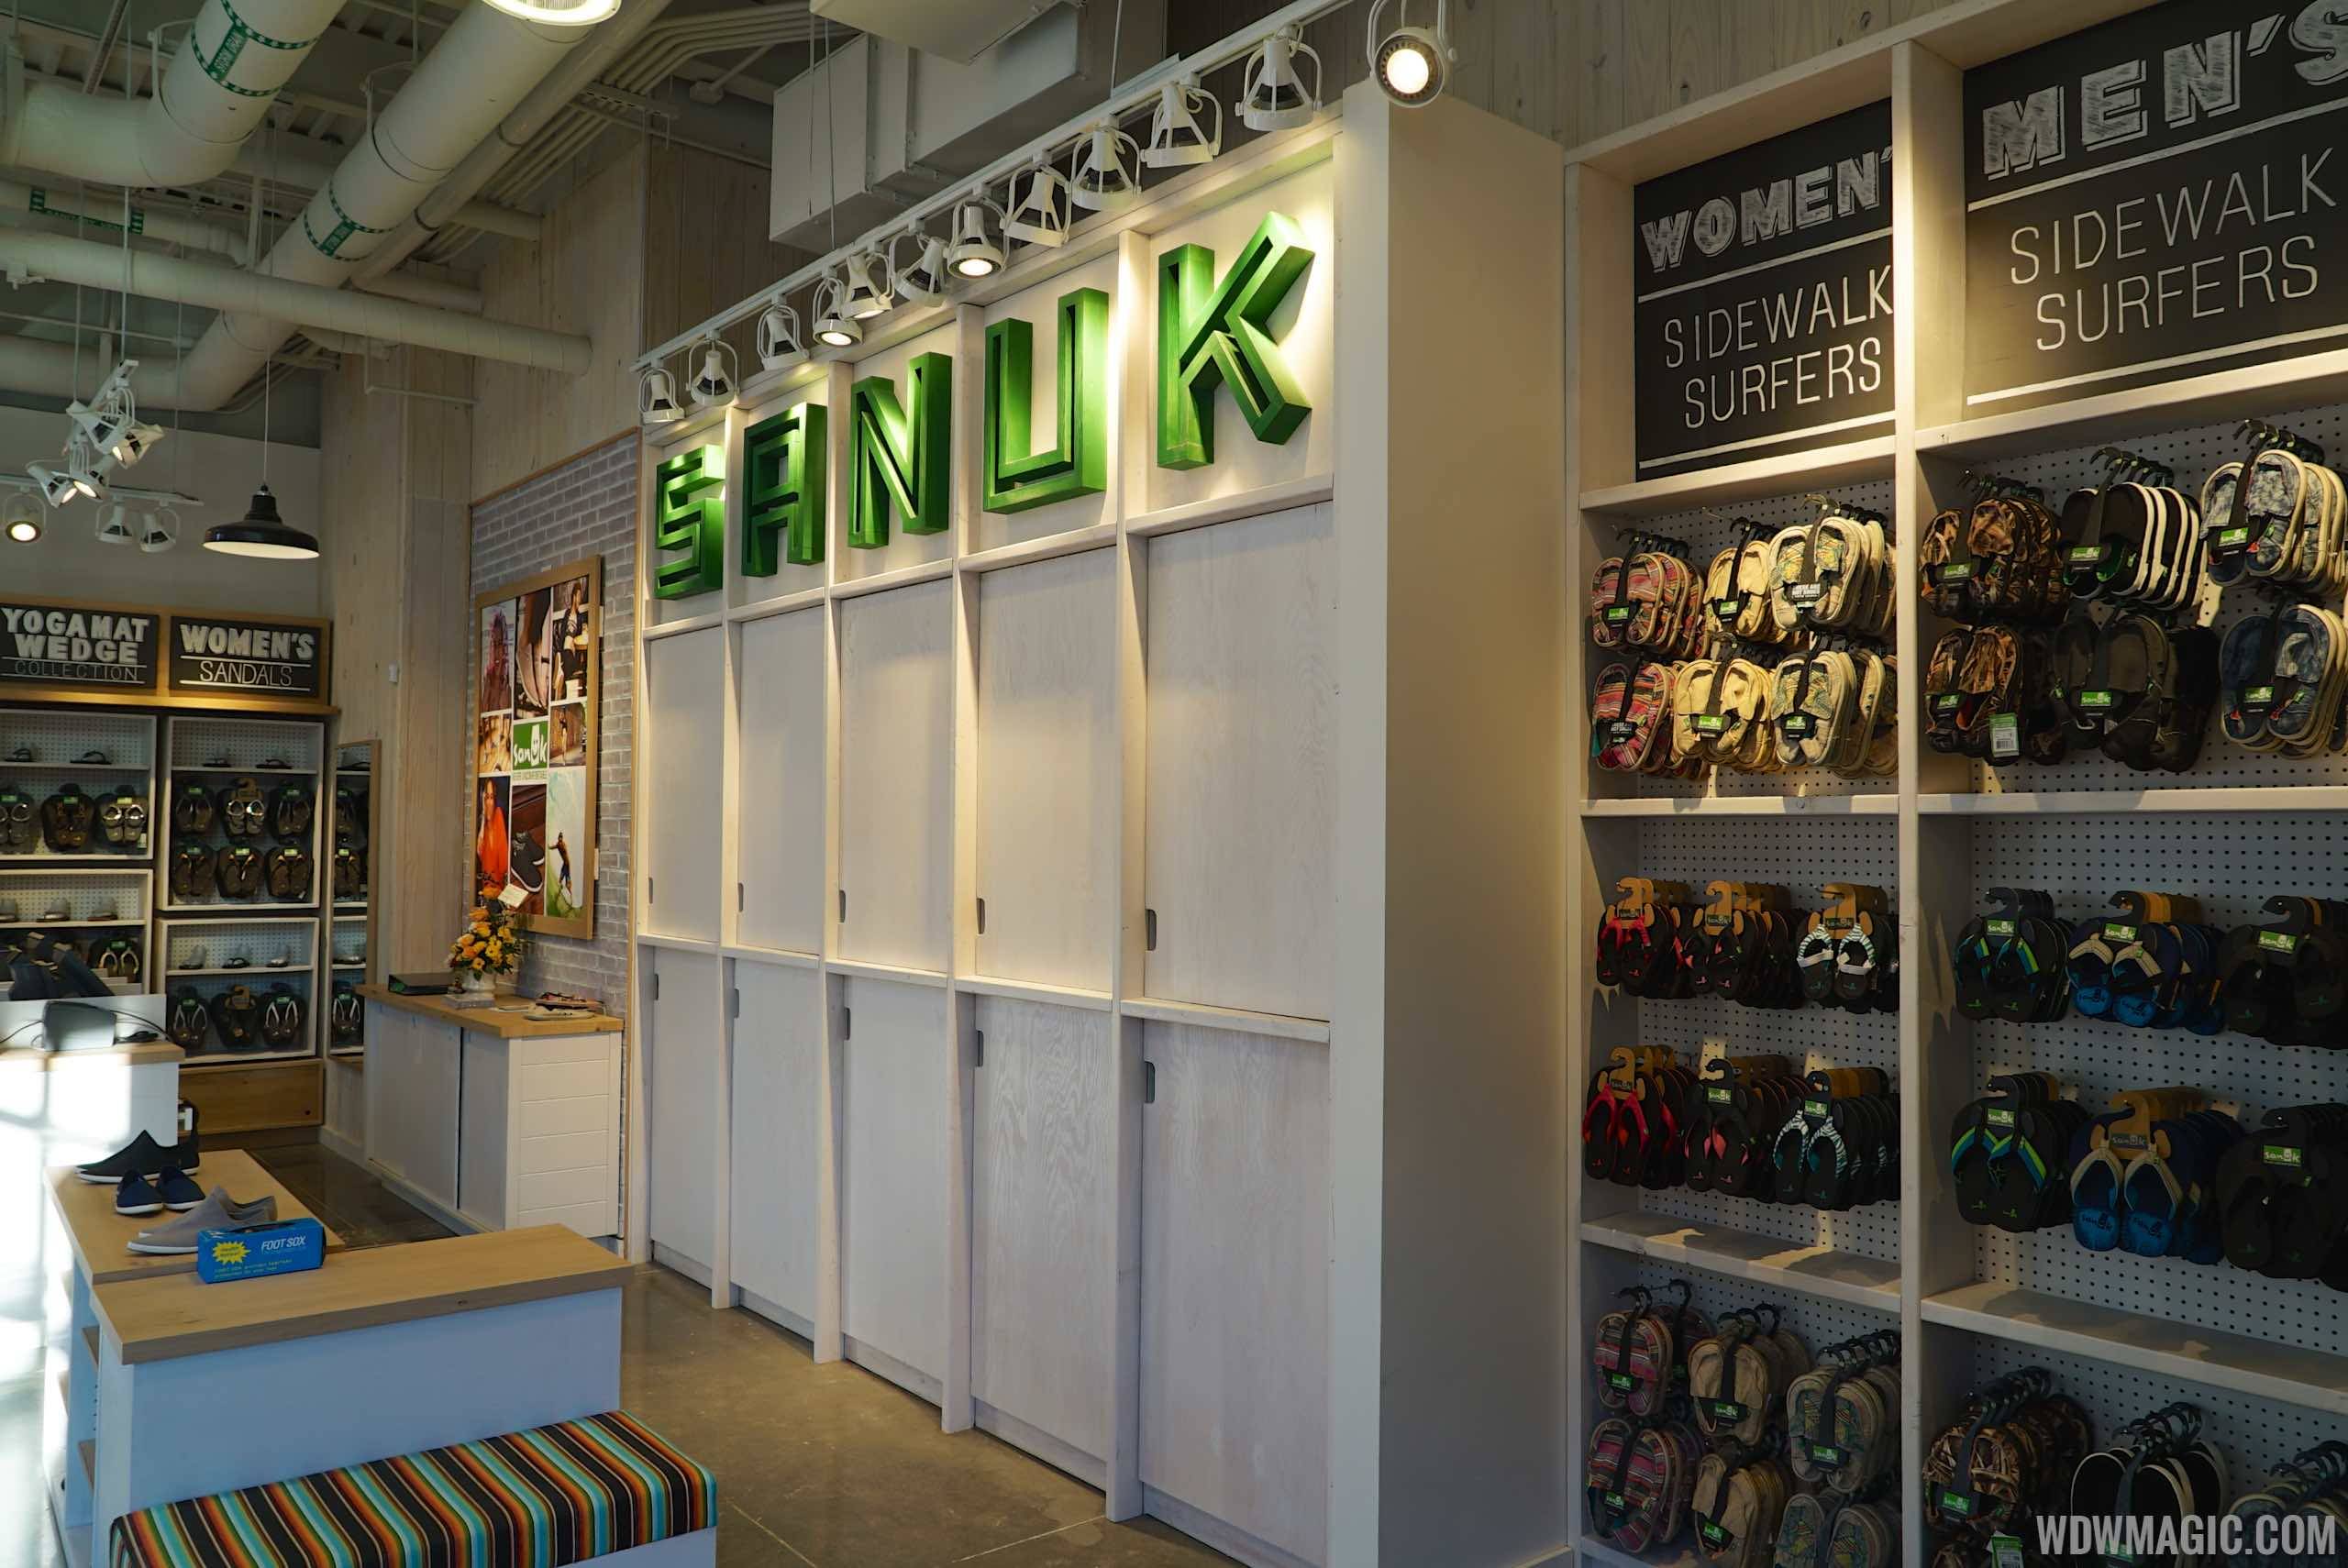 PHOTOS - Sanuk shoe store at Disney Springs The Landing